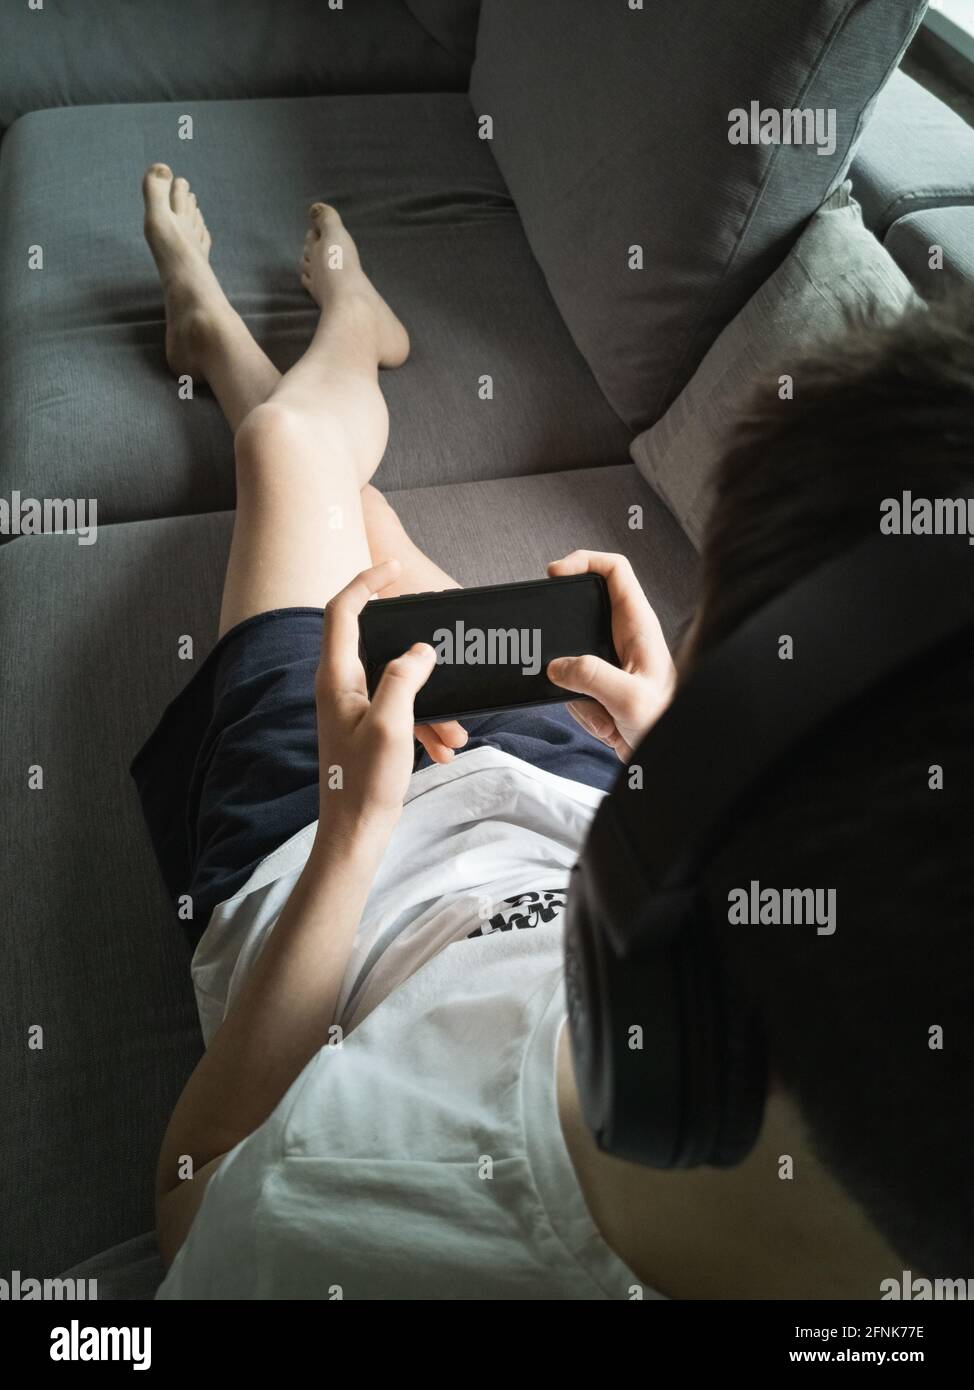 Junge 13-15 Jahre alt auf der Couch mit einem Smartphone In seinen Händen Stockfoto